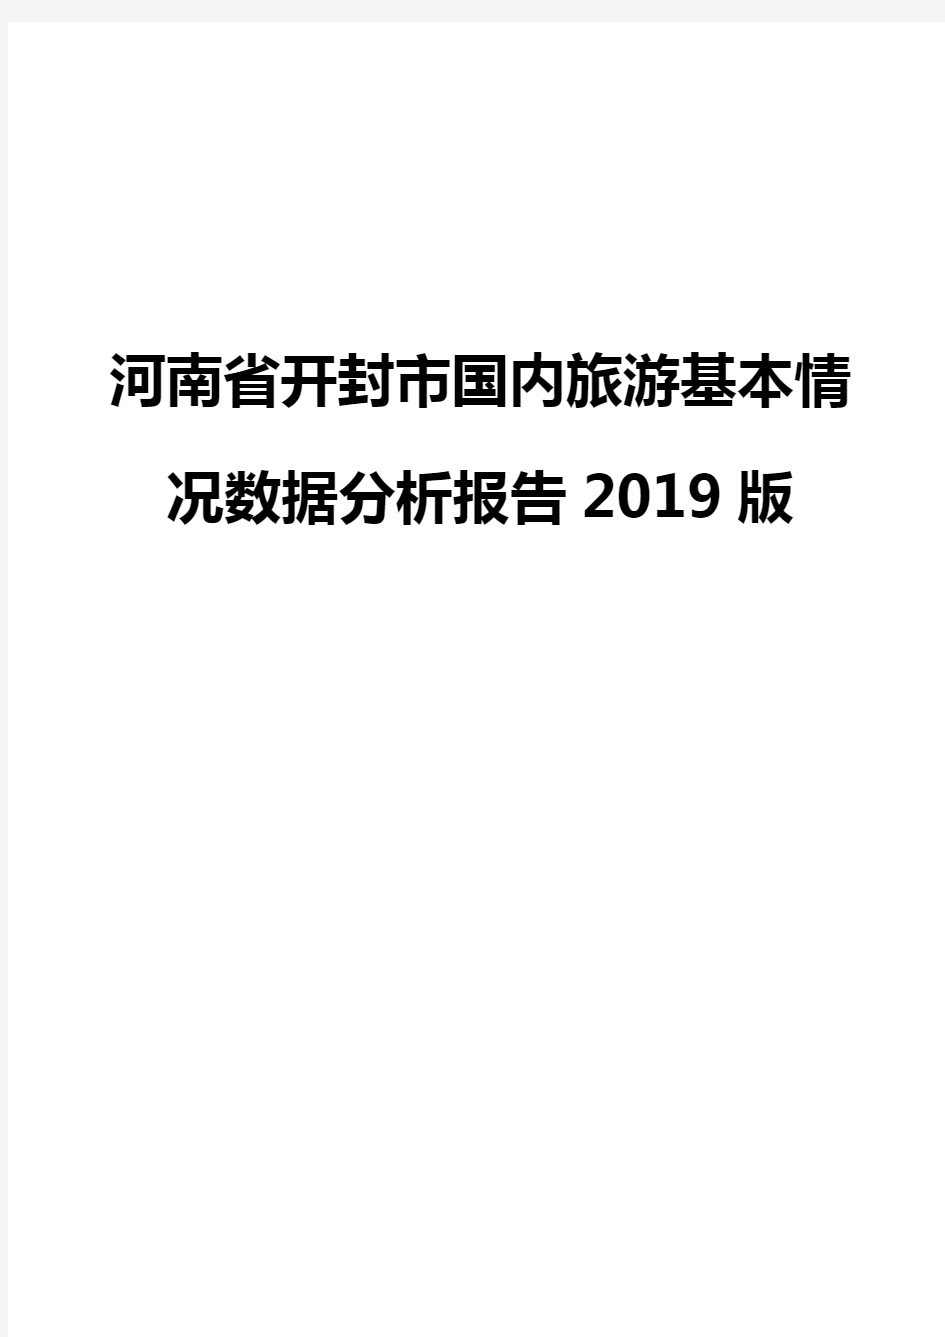 河南省开封市国内旅游基本情况数据分析报告2019版